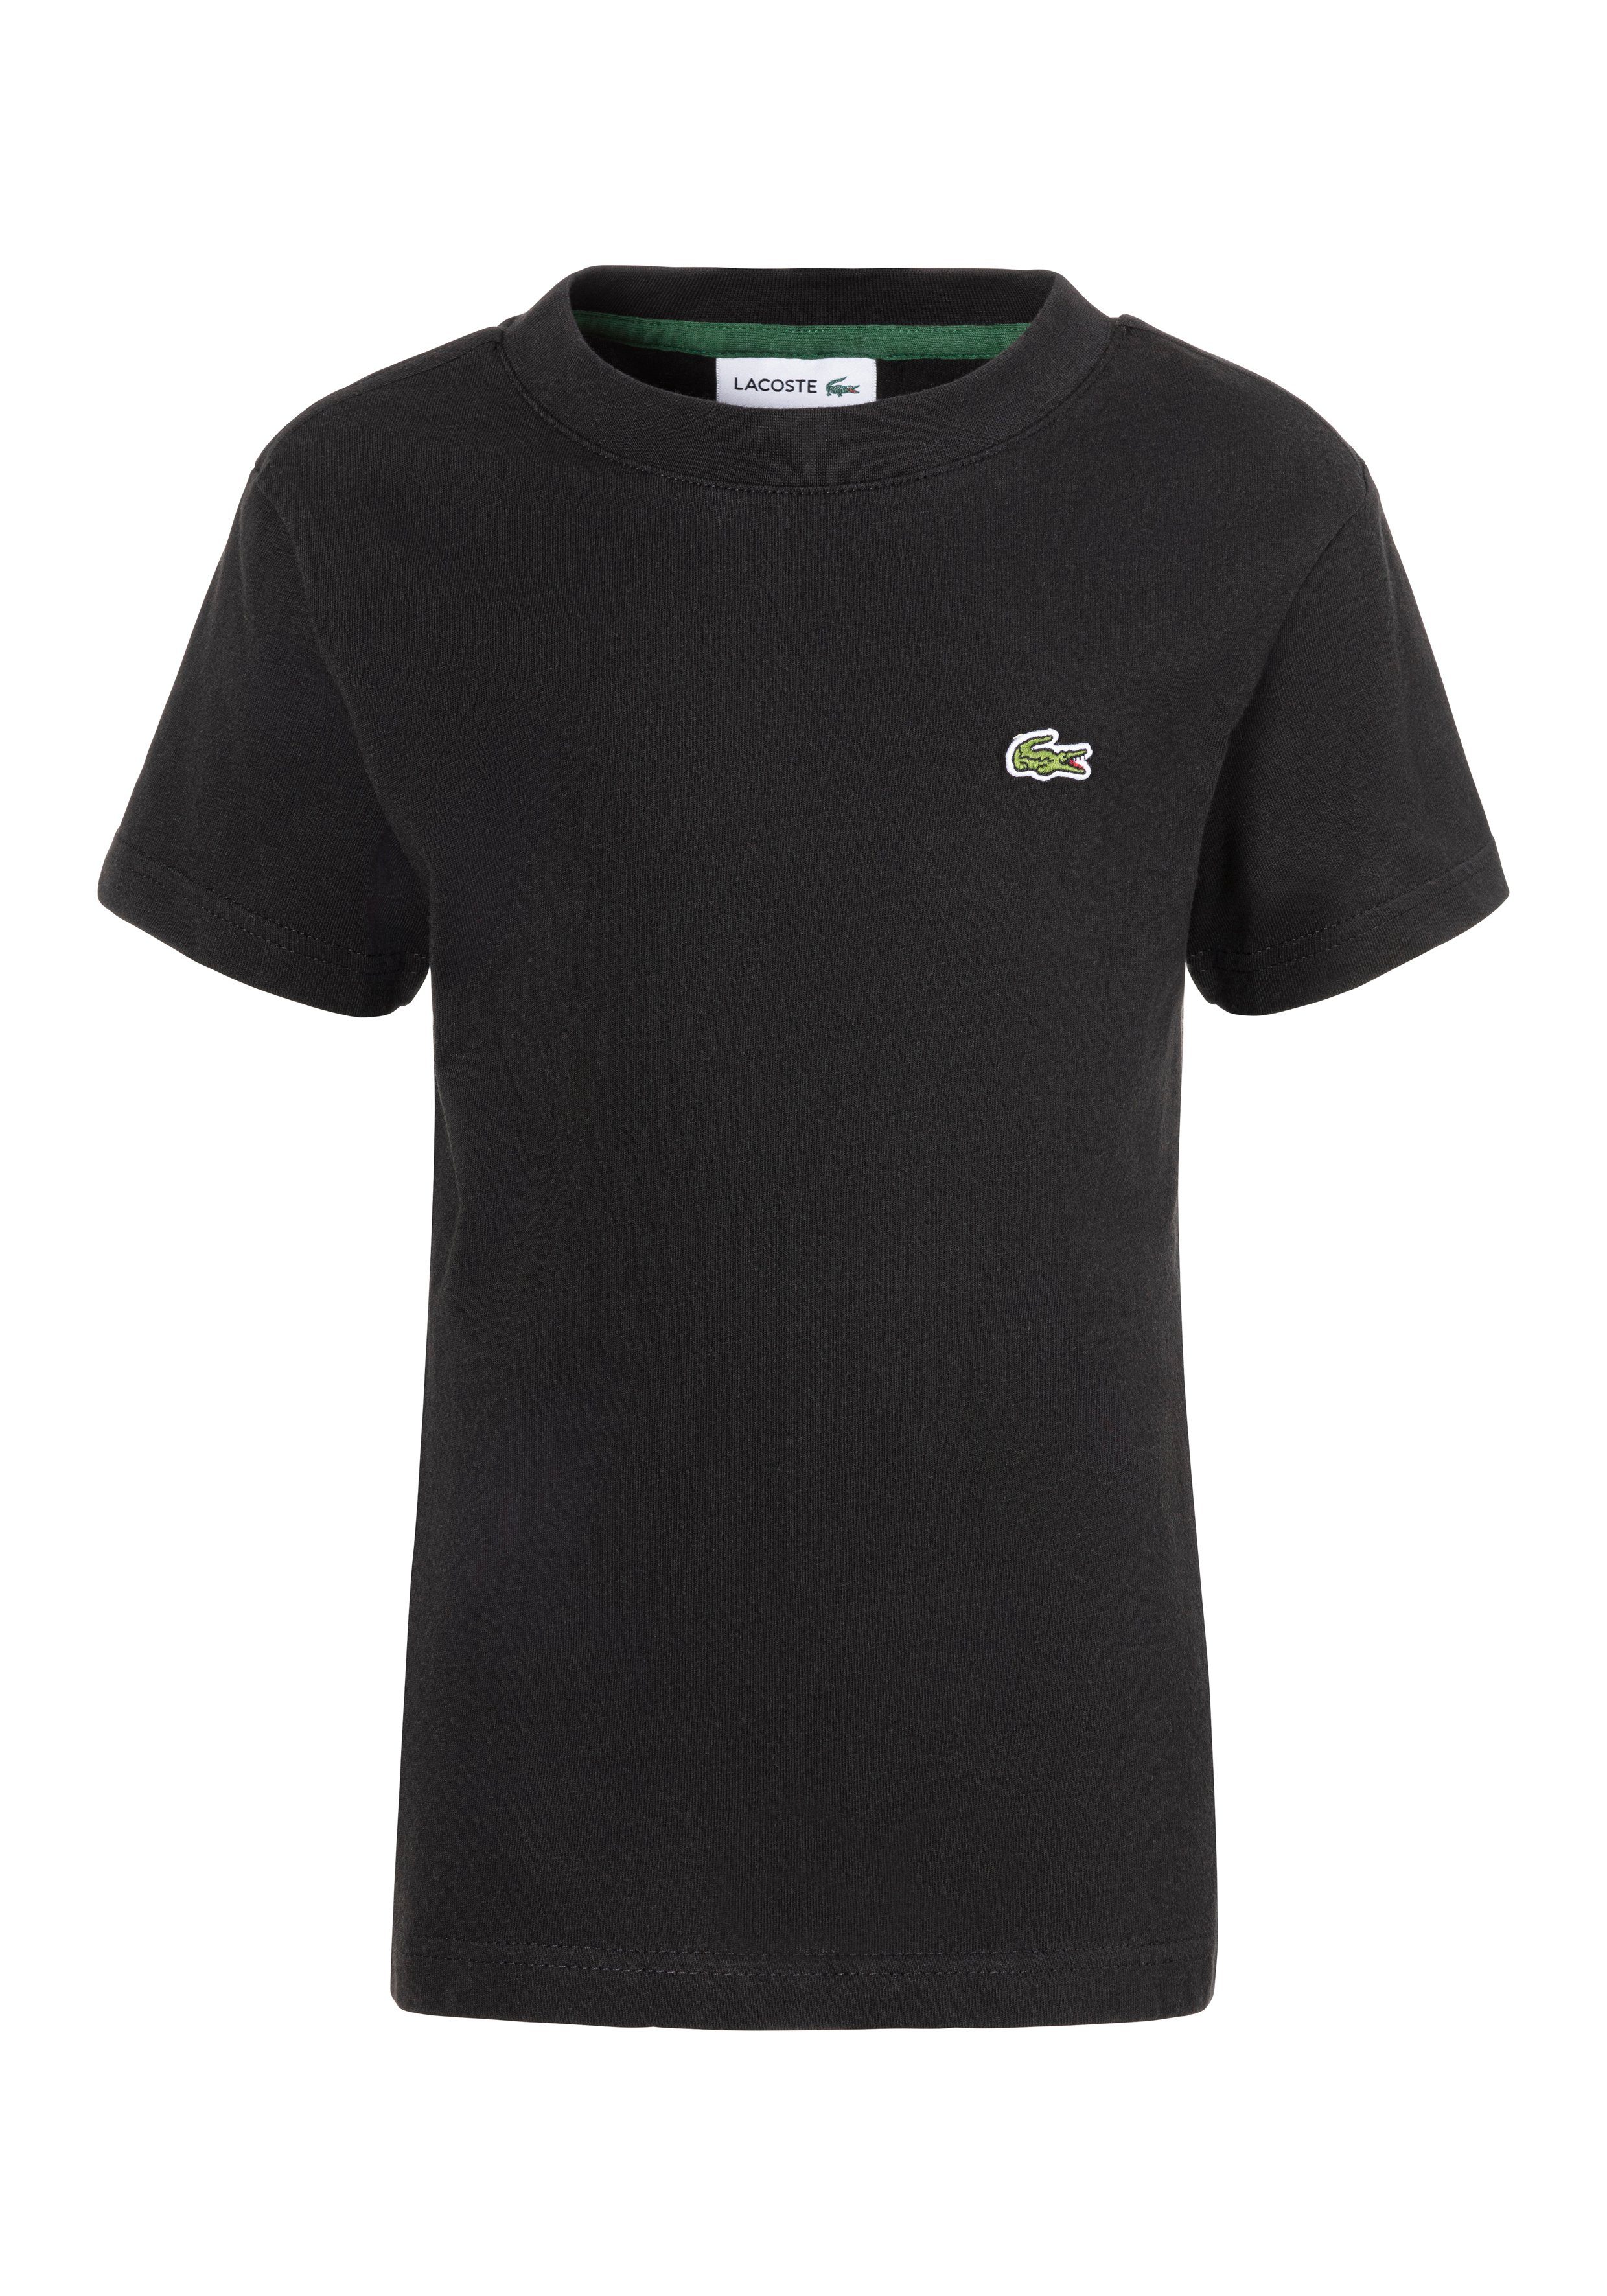 Lacoste T-shirt met logo zwart Biologisch katoen Ronde hals Logo 116